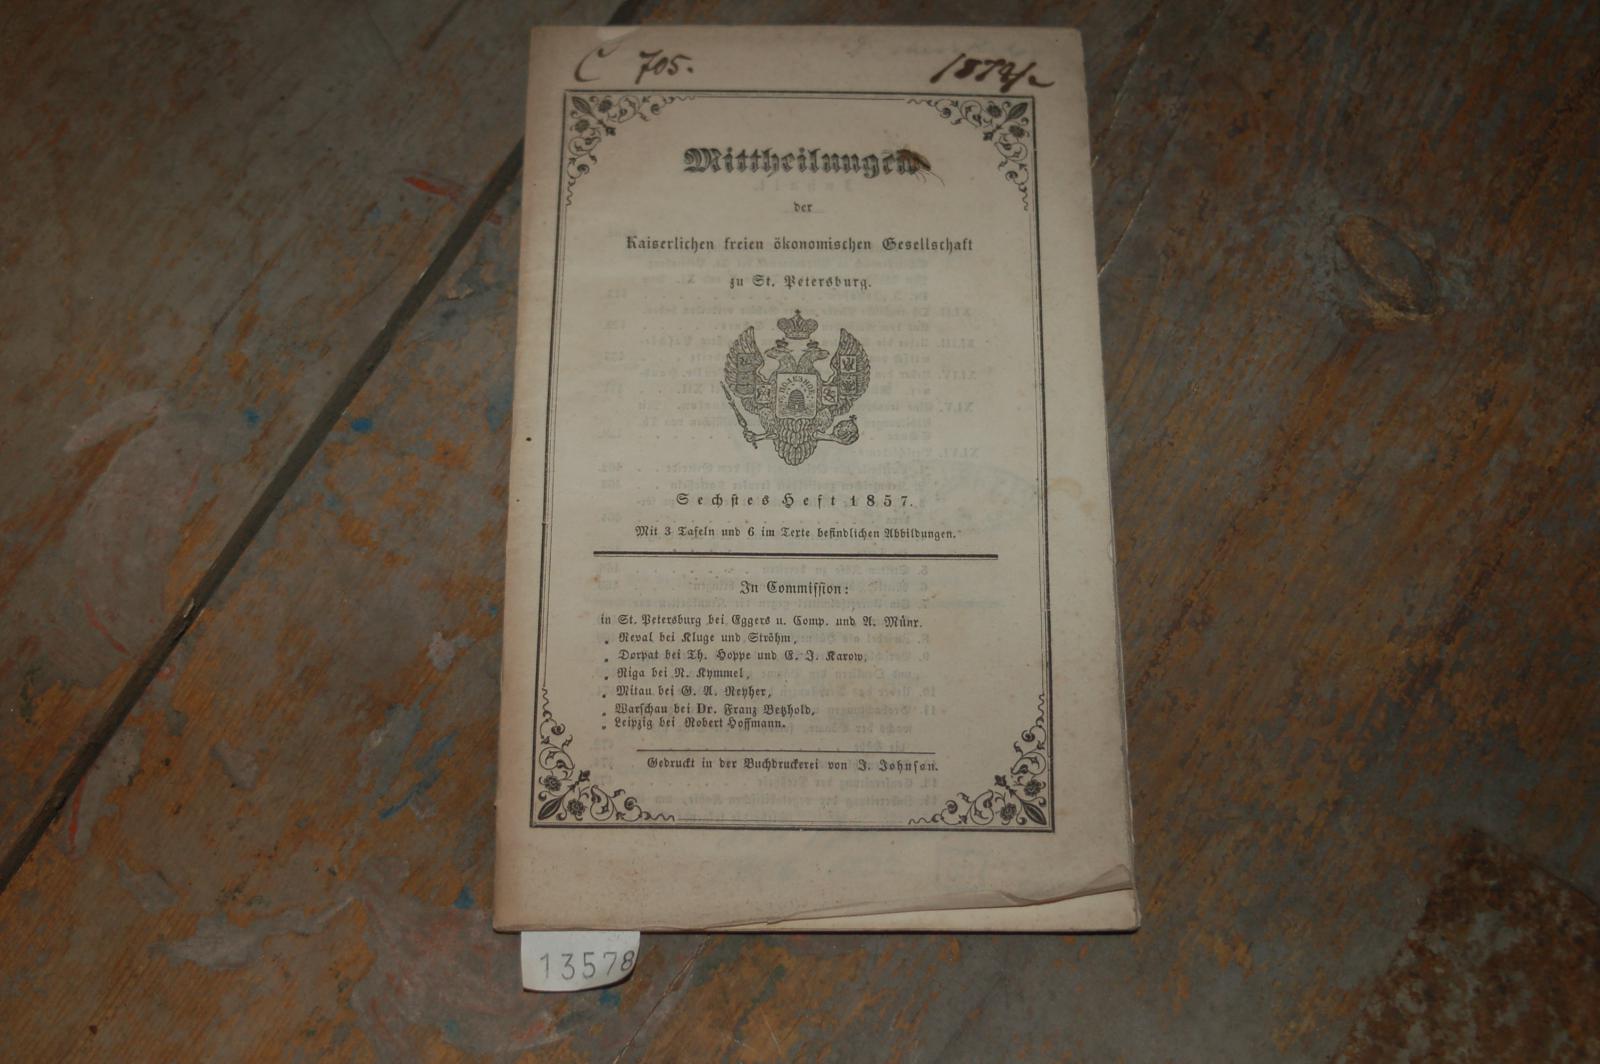 .  Mittheilungen der kaiserlichen freien ökonomischen gesellschaft zu St. Petersburg Heft 6 1857 